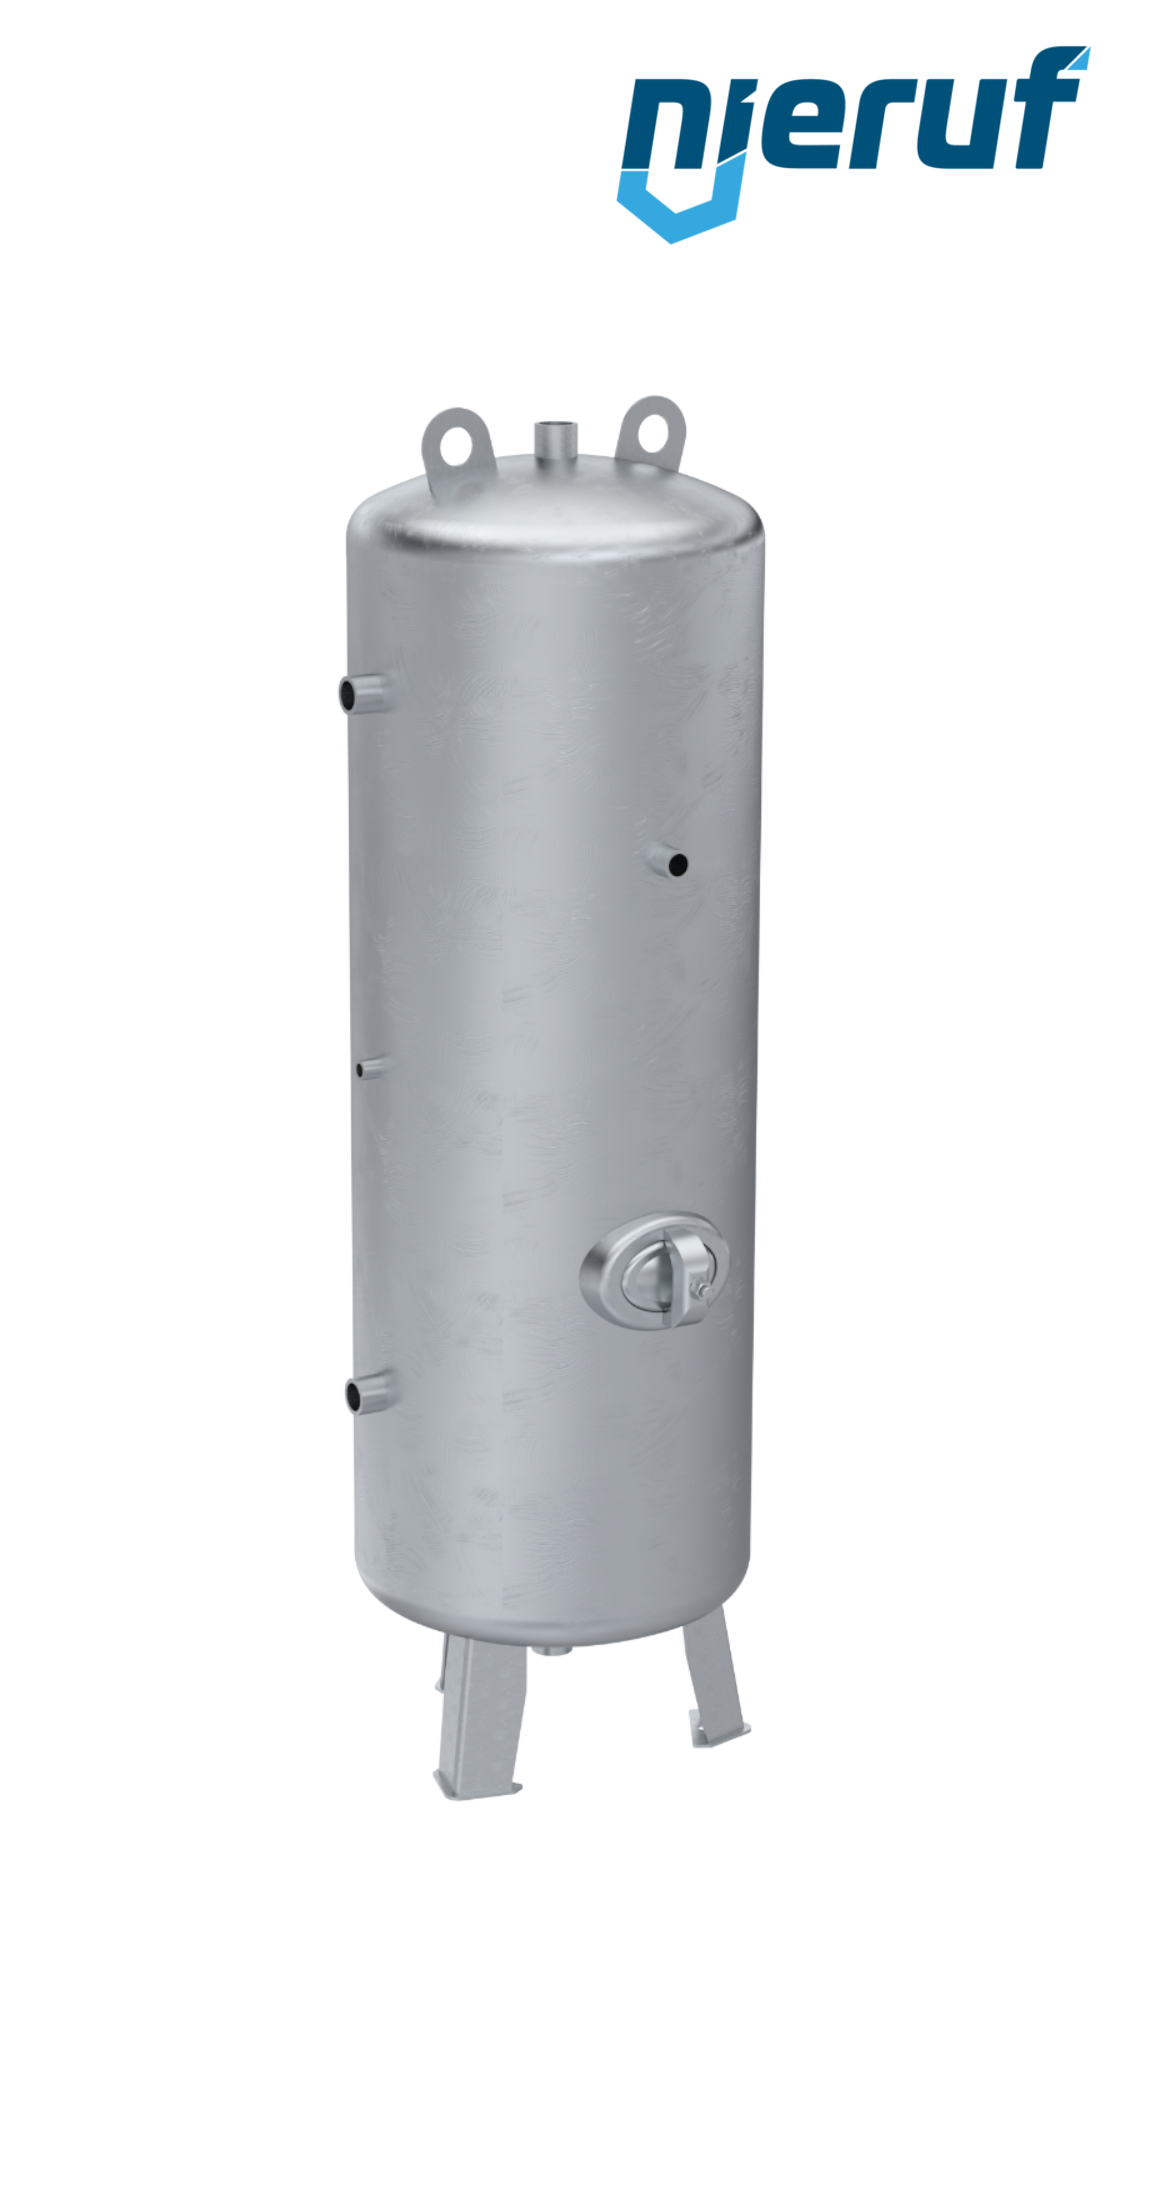 Serbatoio a pressione verticale BE01 350 litri, 0-11 bar, acciaio primerizzato